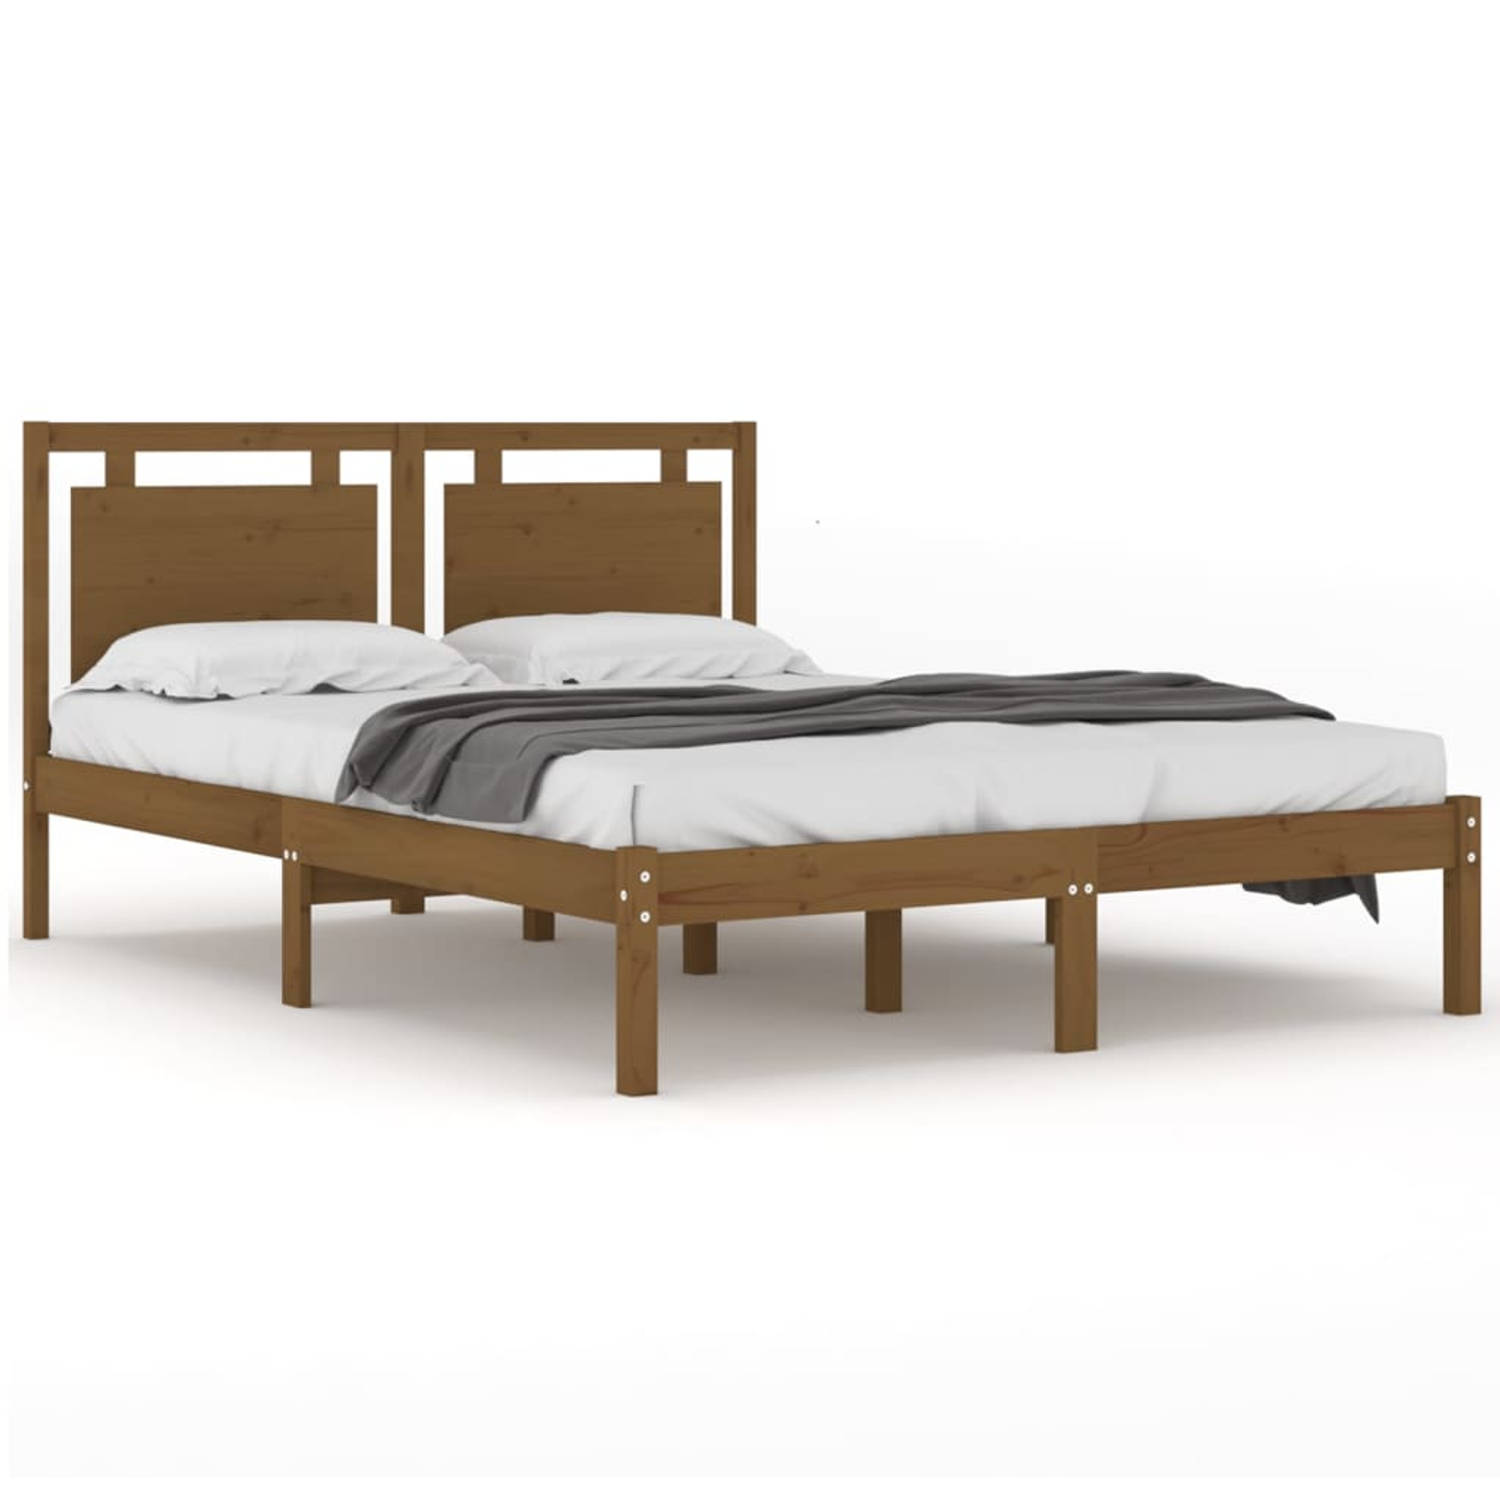 The Living Store Bedframe massief hout honingbruin 160x200 cm - Bedframe - Bedframes - Tweepersoonsbed - Bed - Bedombouw - Dubbel Bed - Frame - Bed Frame - Ledikant - Houten Bedfra